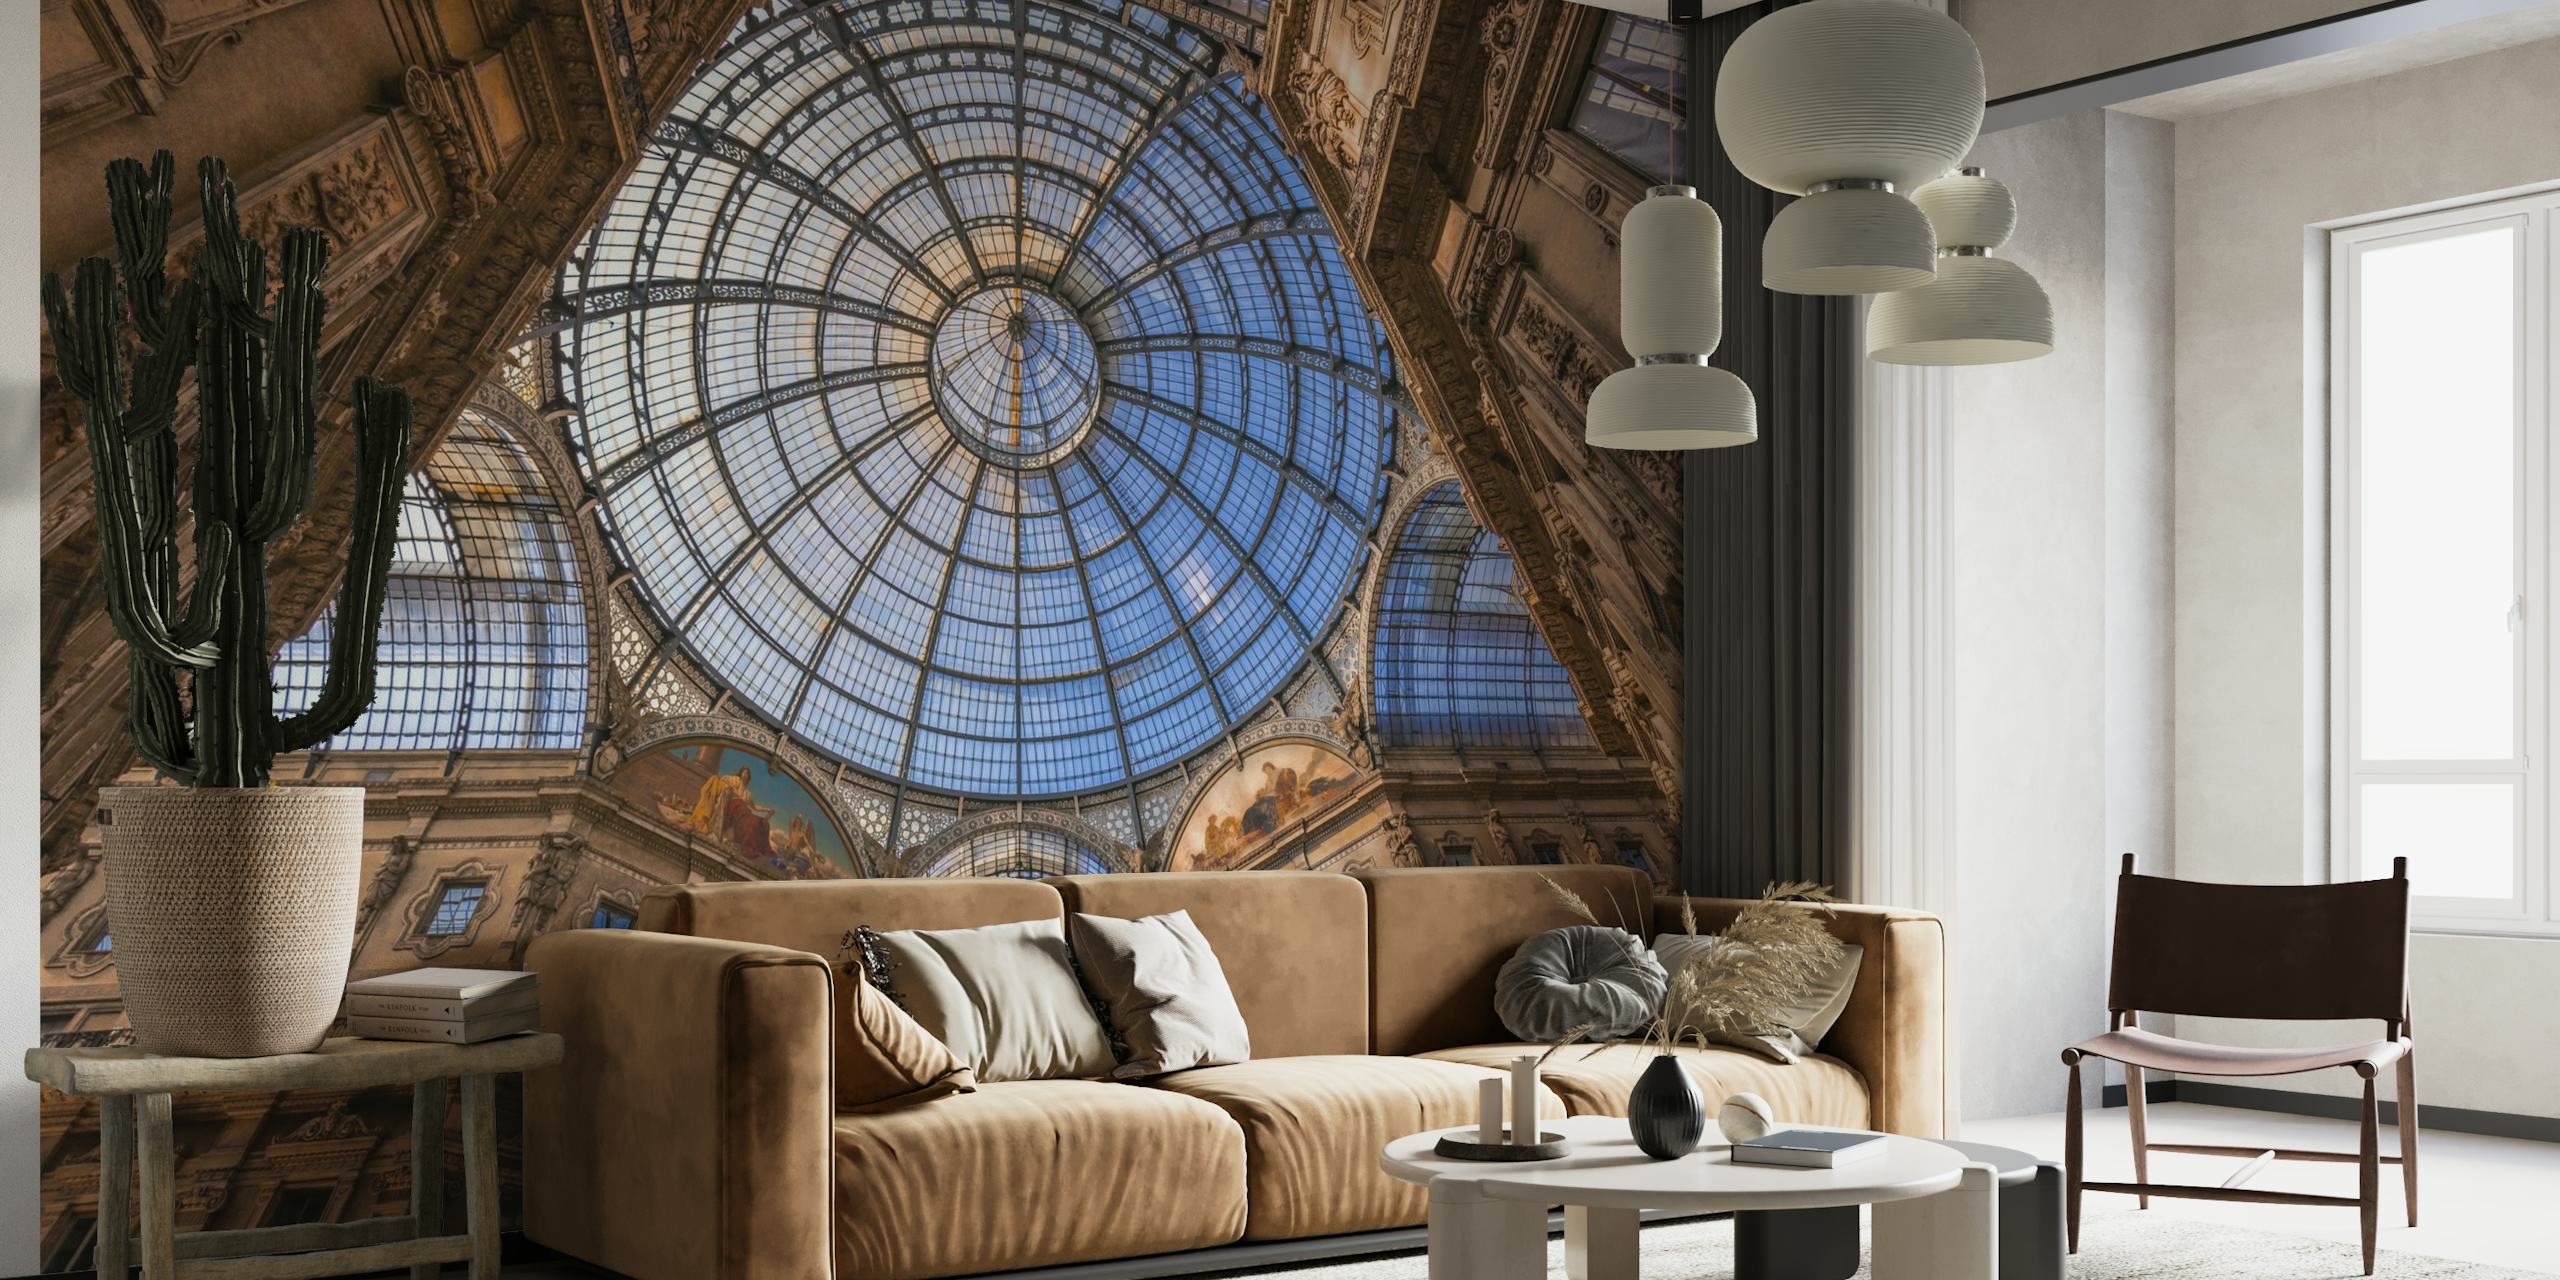 Murale architecturale pour plafond en forme de dôme dans des tons de bleu et de beige, rehaussant le décor de la pièce avec une touche majestueuse.